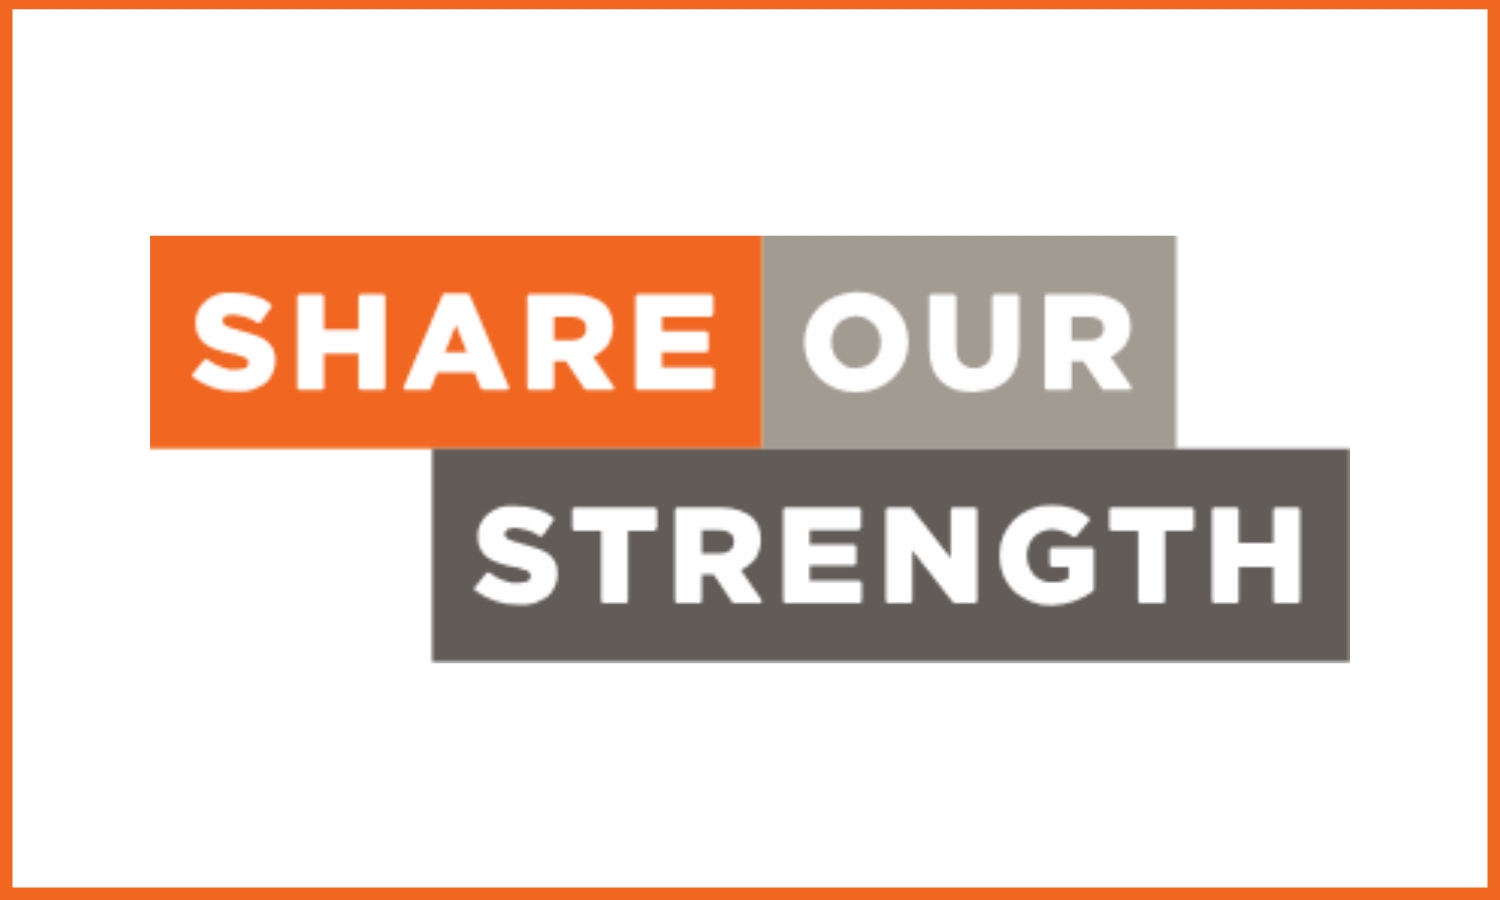 Share Our Strength logo